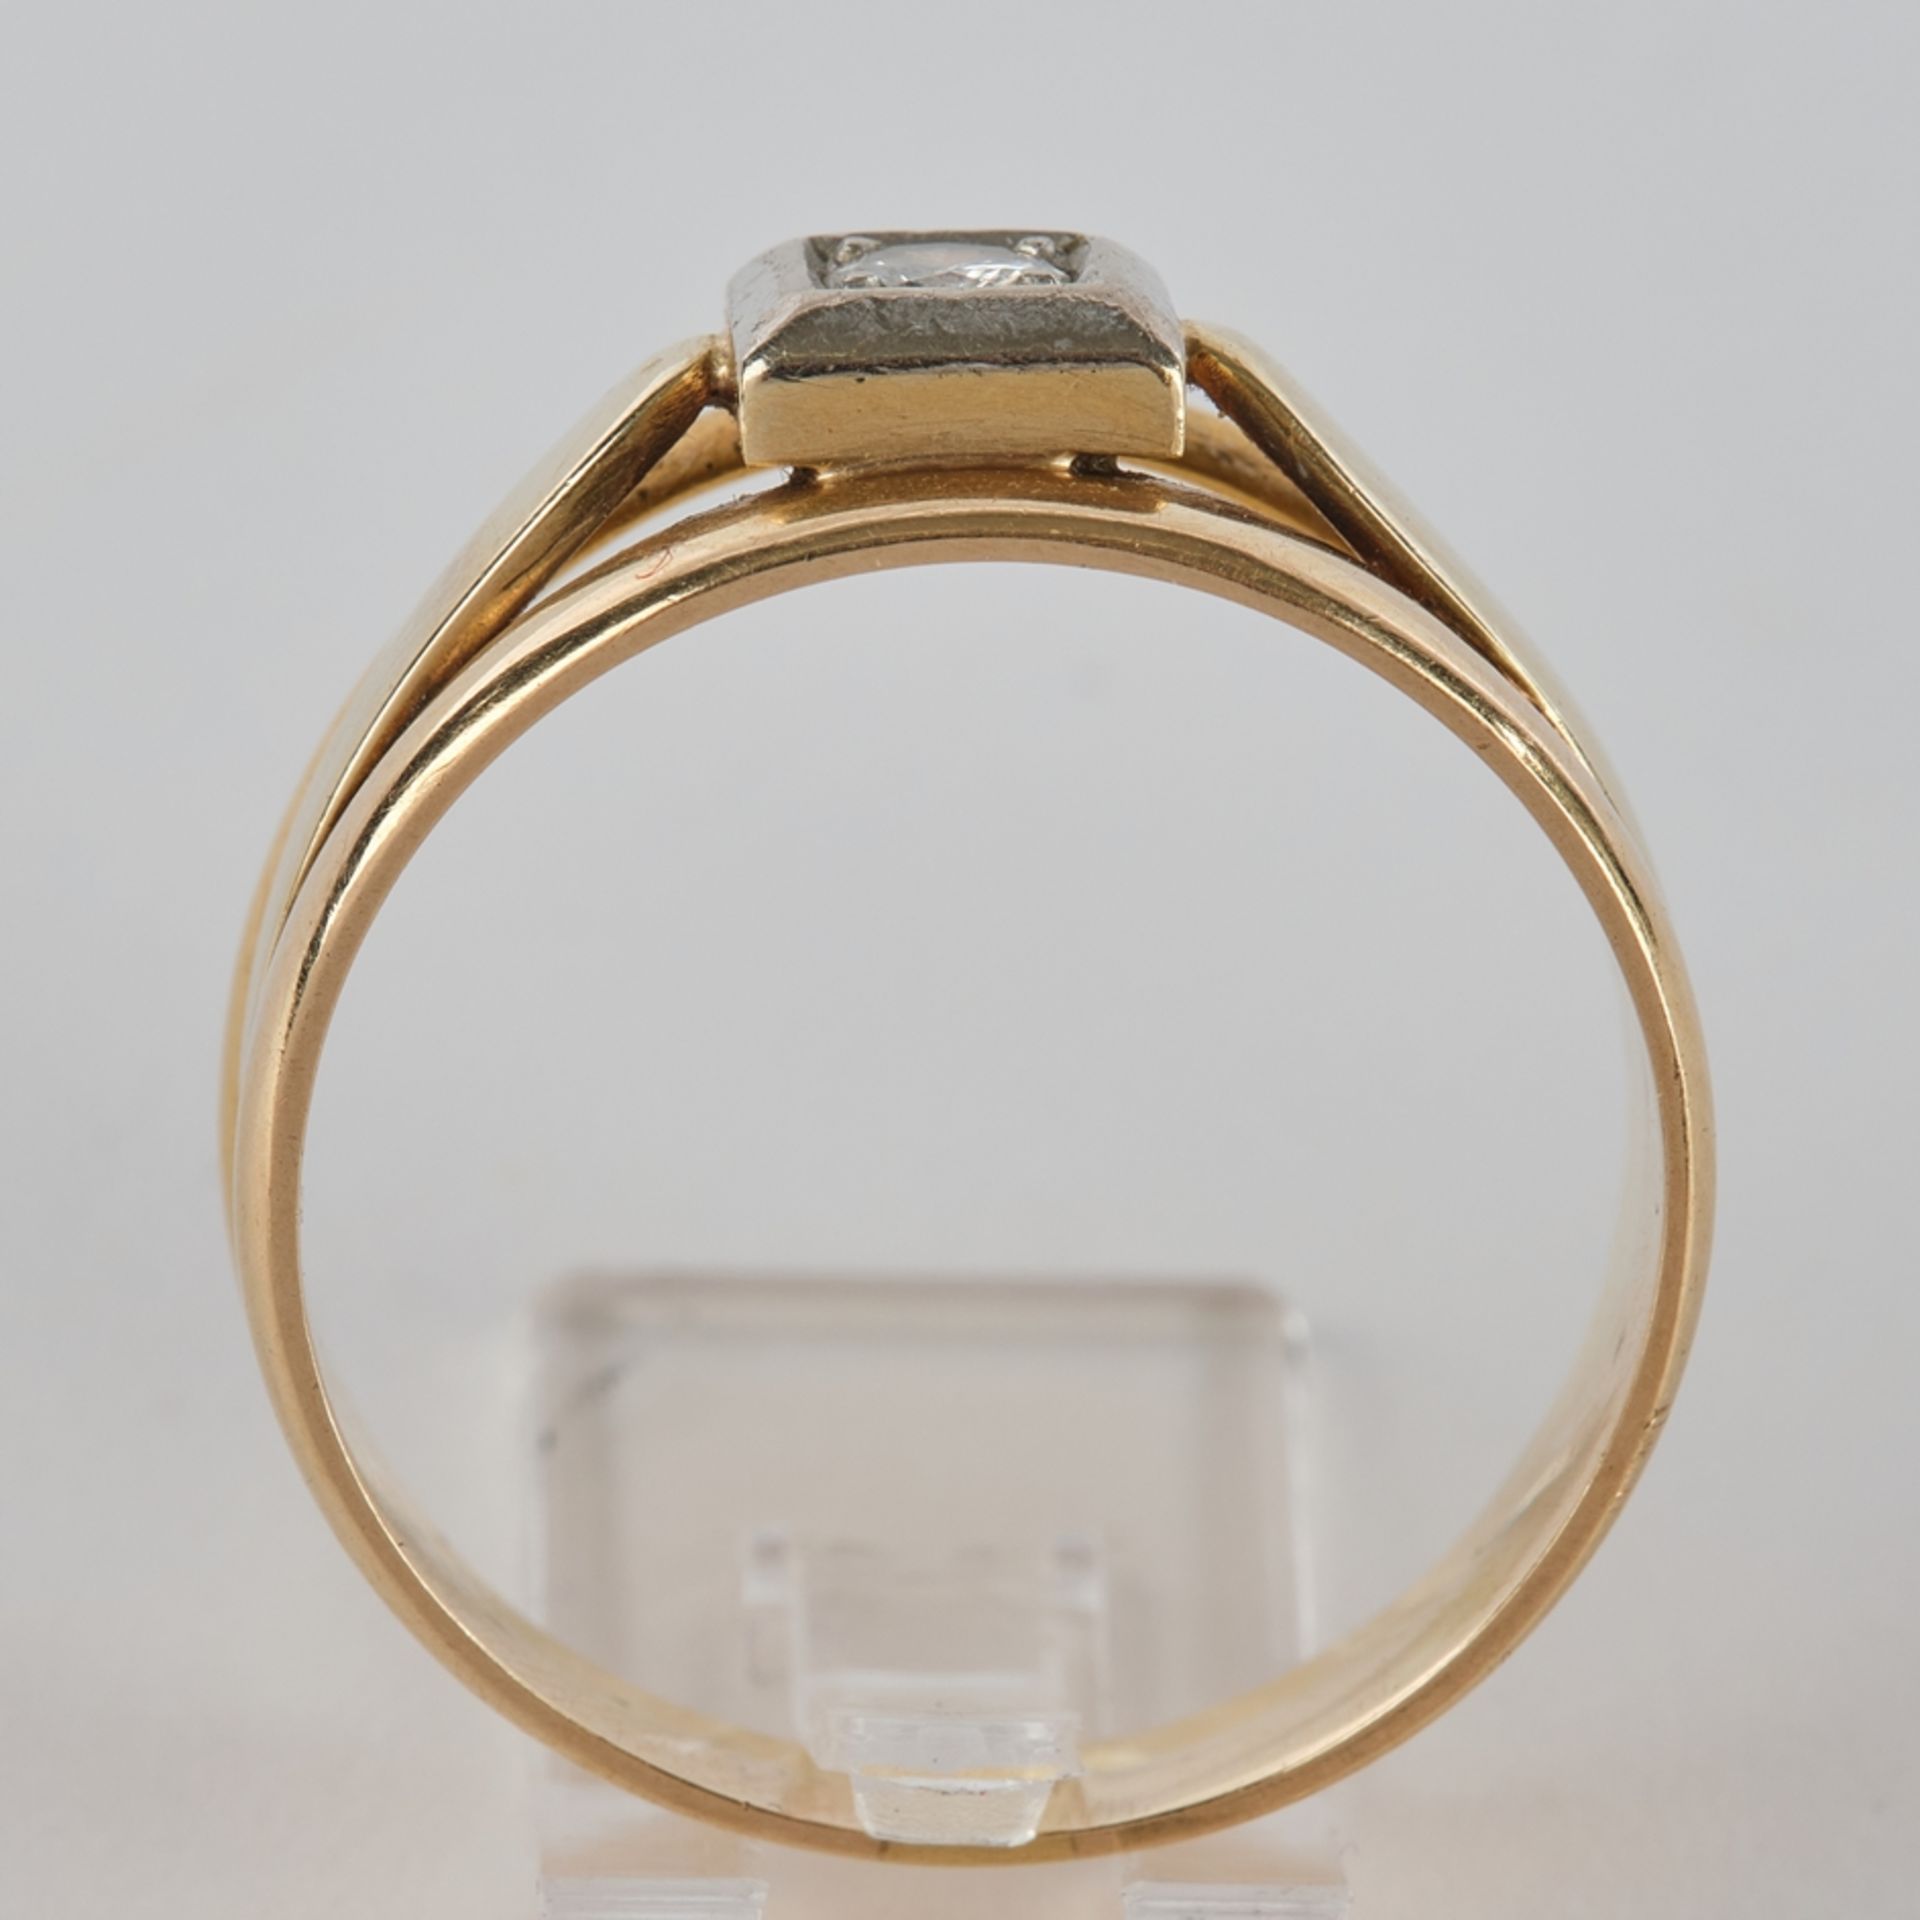 Ring, tricolor, WG/GG/RG 750, nicht gestempelt, 1 zentraler Brillant ca. 0.08 ct., 6.8 g, RM 21 - Bild 3 aus 3